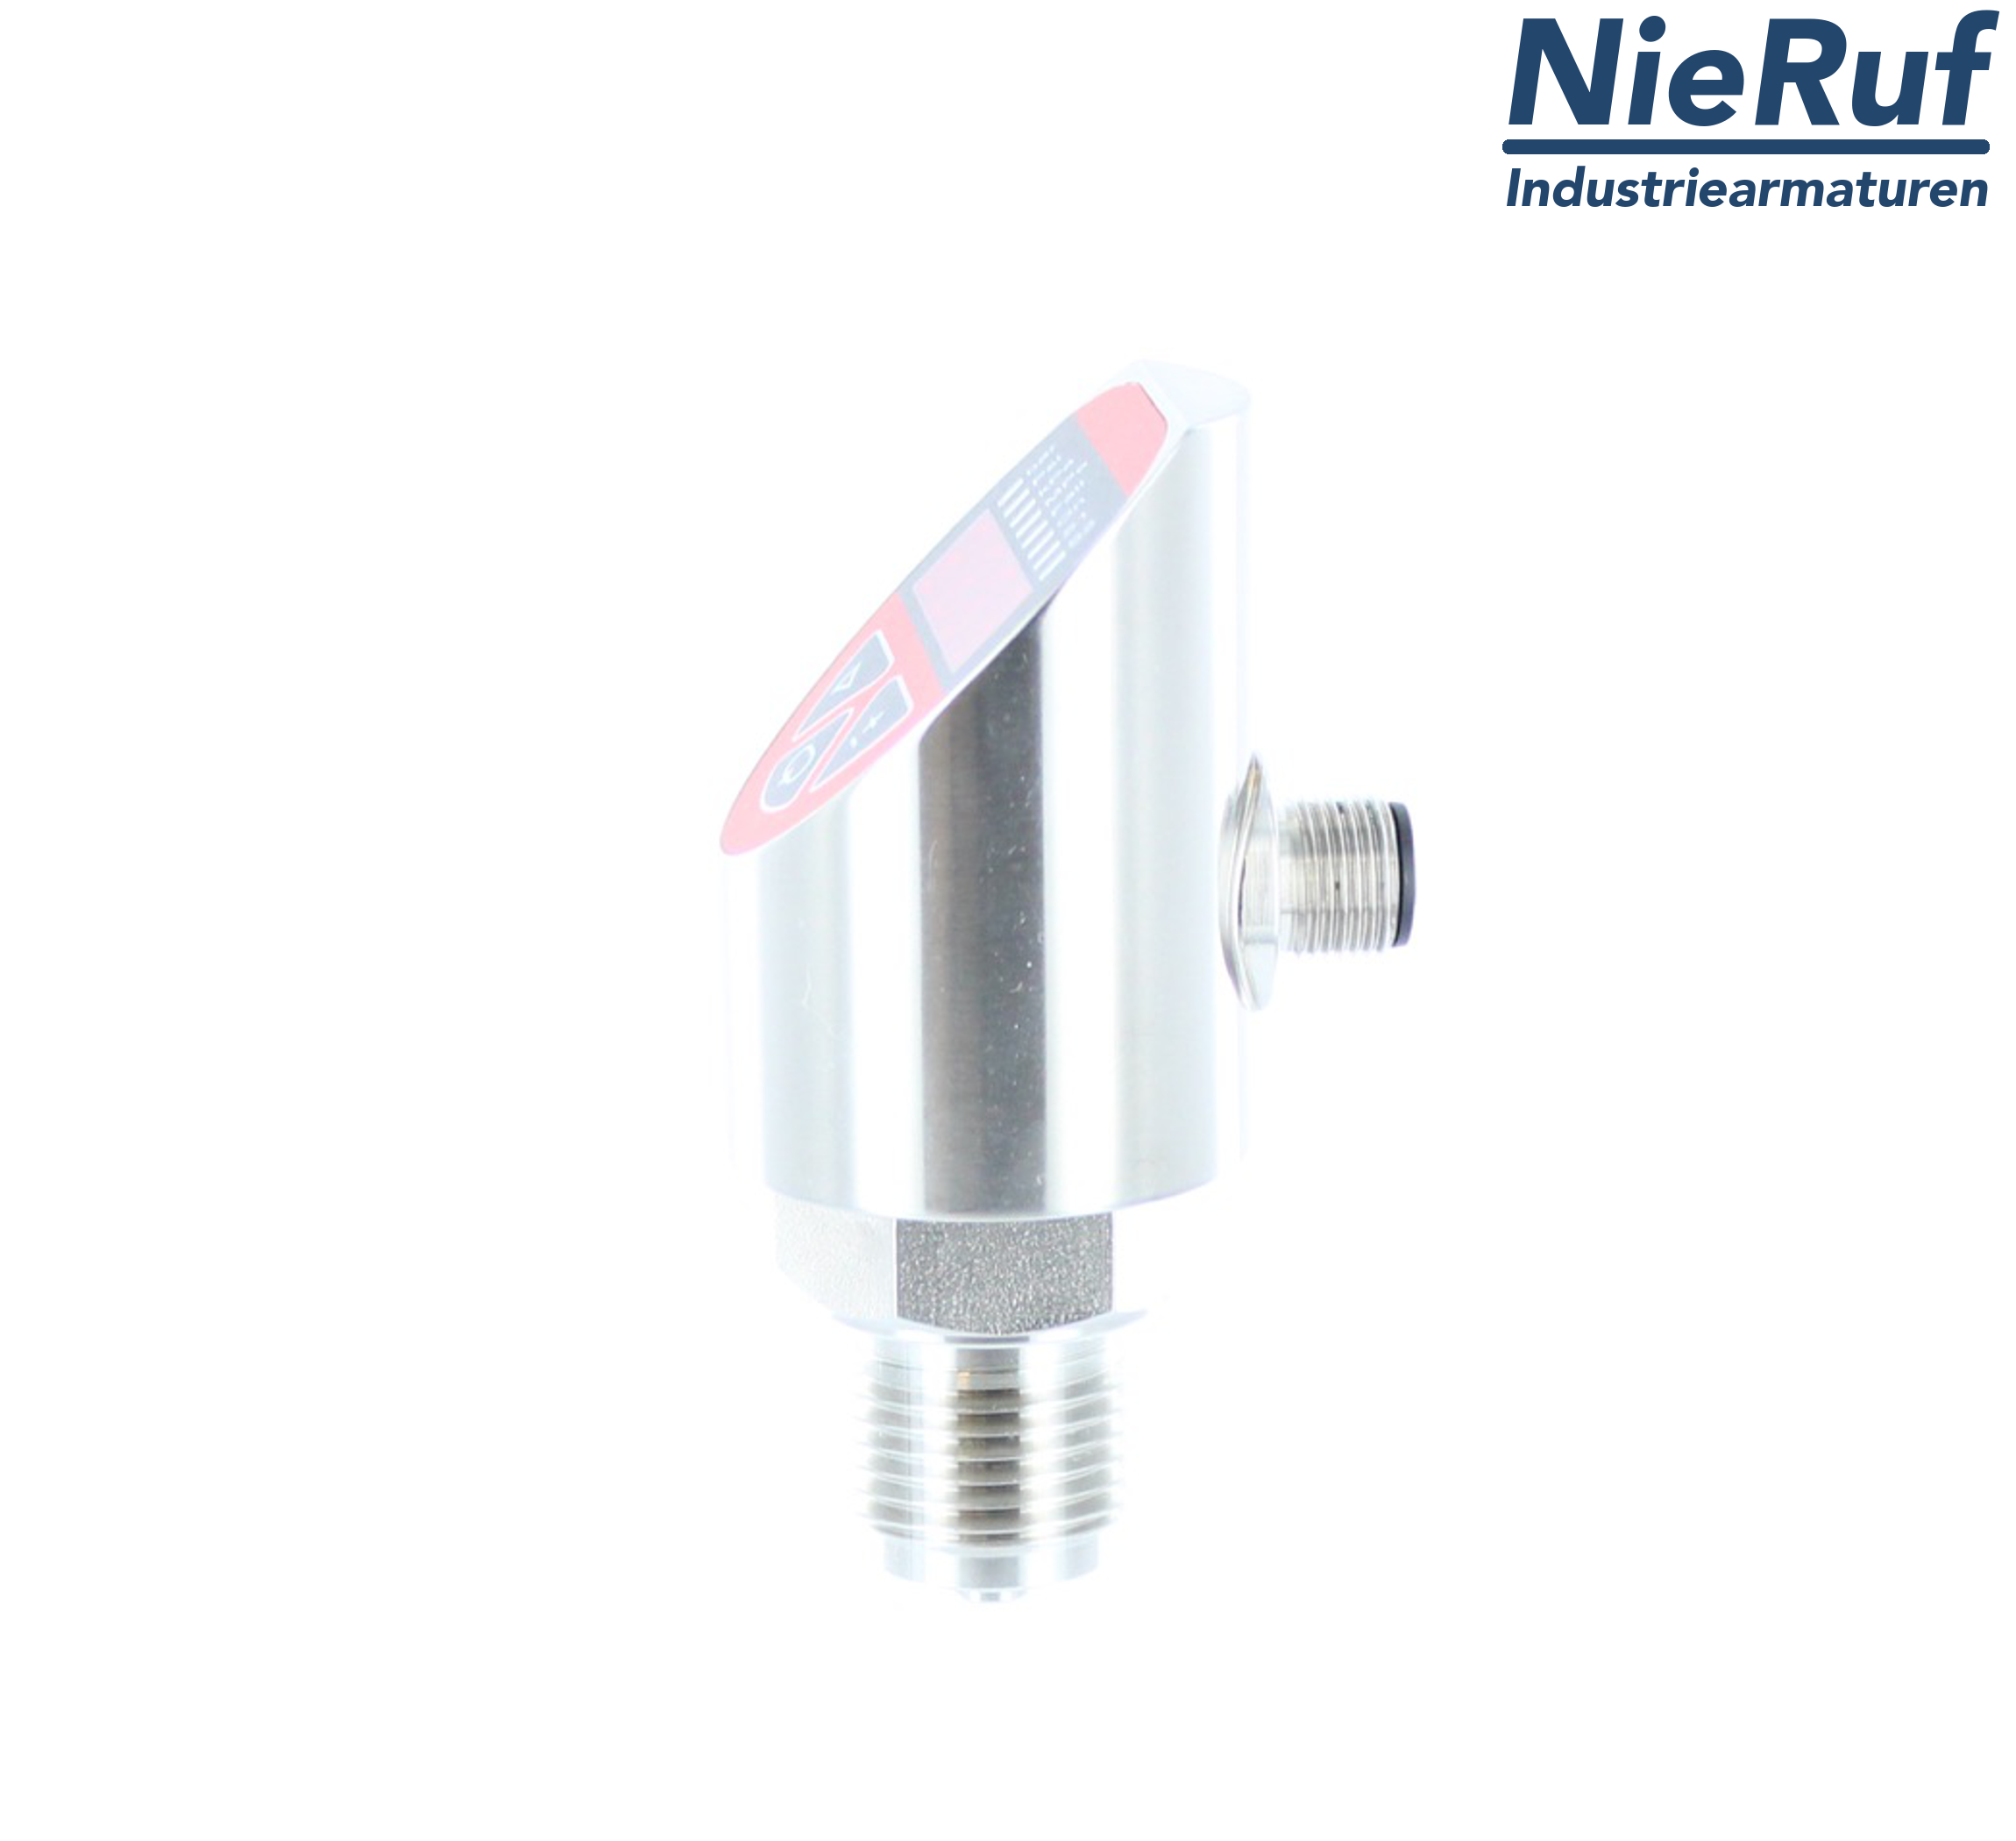 digital pressure sensor G 1/2" B IB 4-wire: 1xPNP, 1x4 - 20mA FPM 0,0 - 0,60 bar